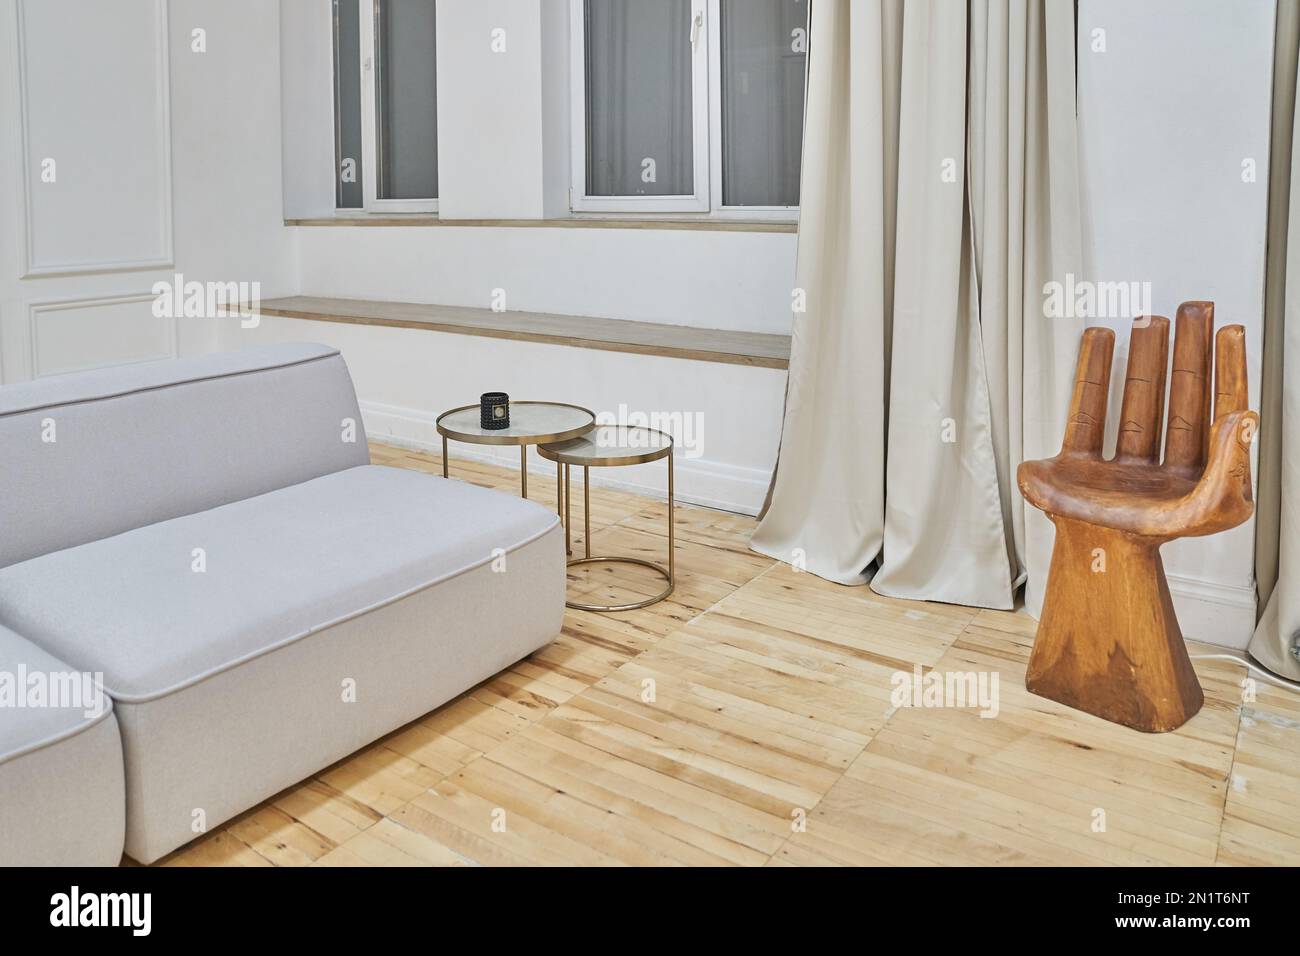 Primo piano di una parte del divano e di una sedia a forma di mano in un  moderno soggiorno interno. Quantità minima di mobili con spazio per la  copia. Foto di alta